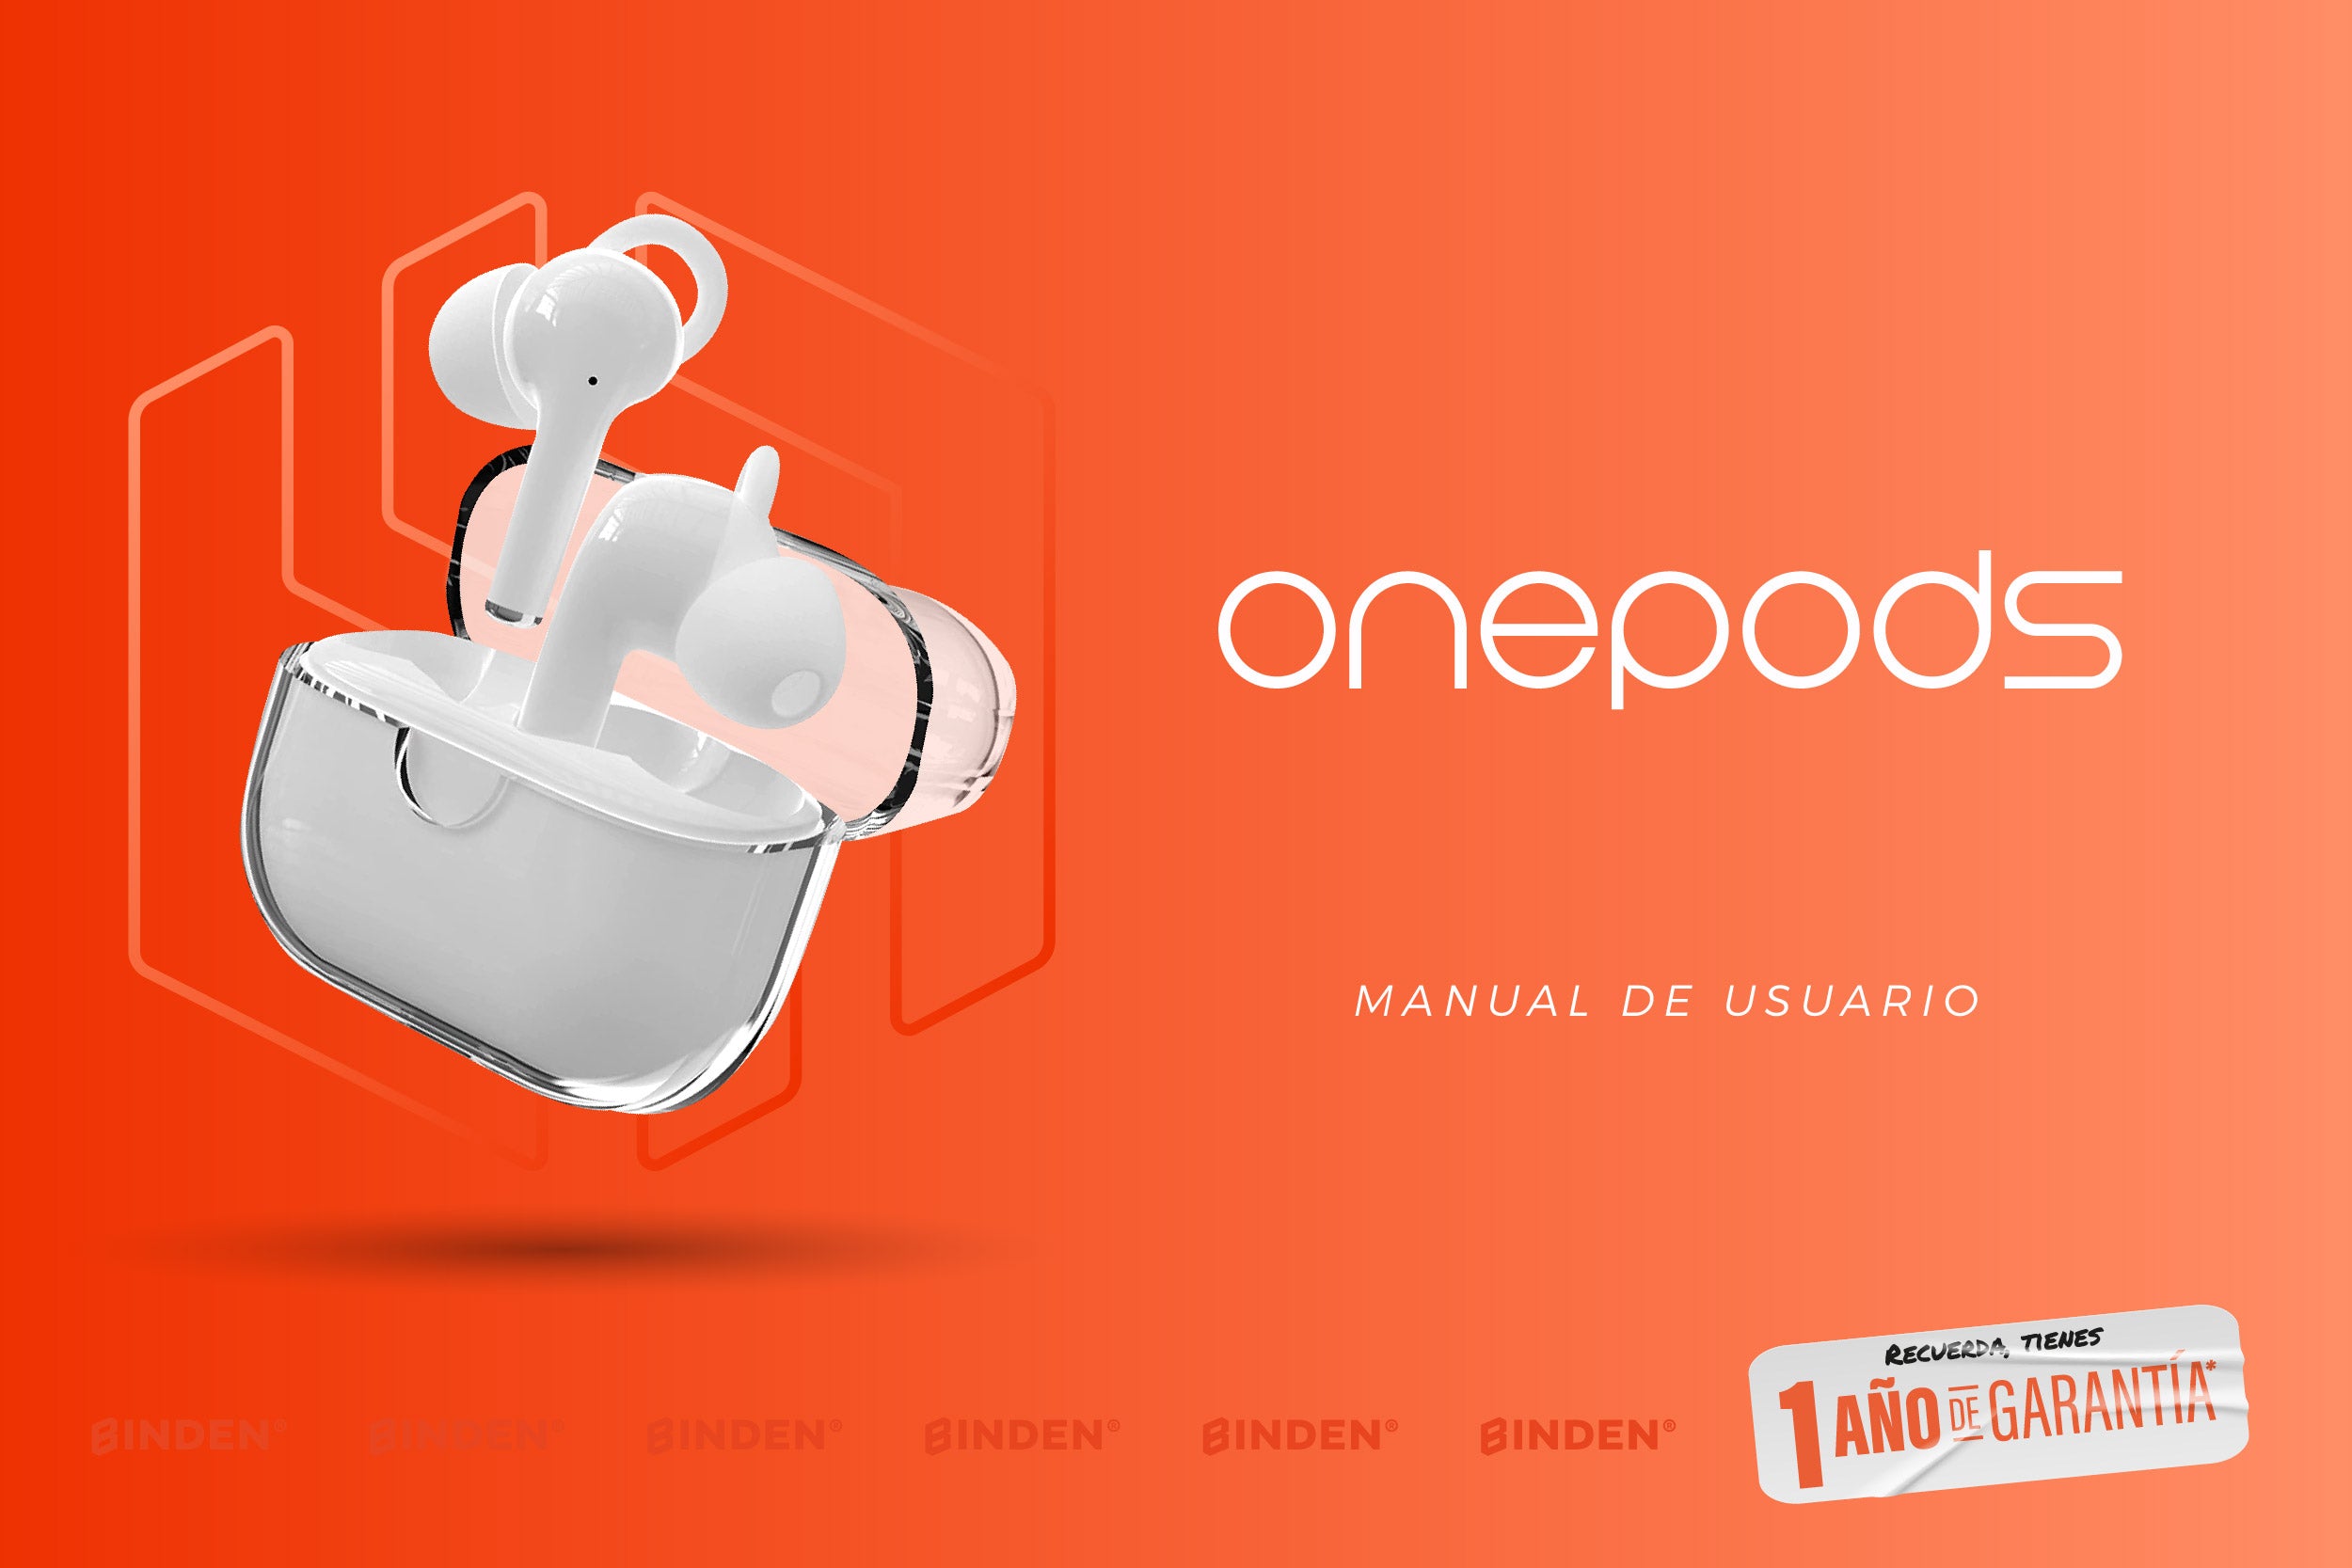 Manual de usuario: Audífonos Onepods